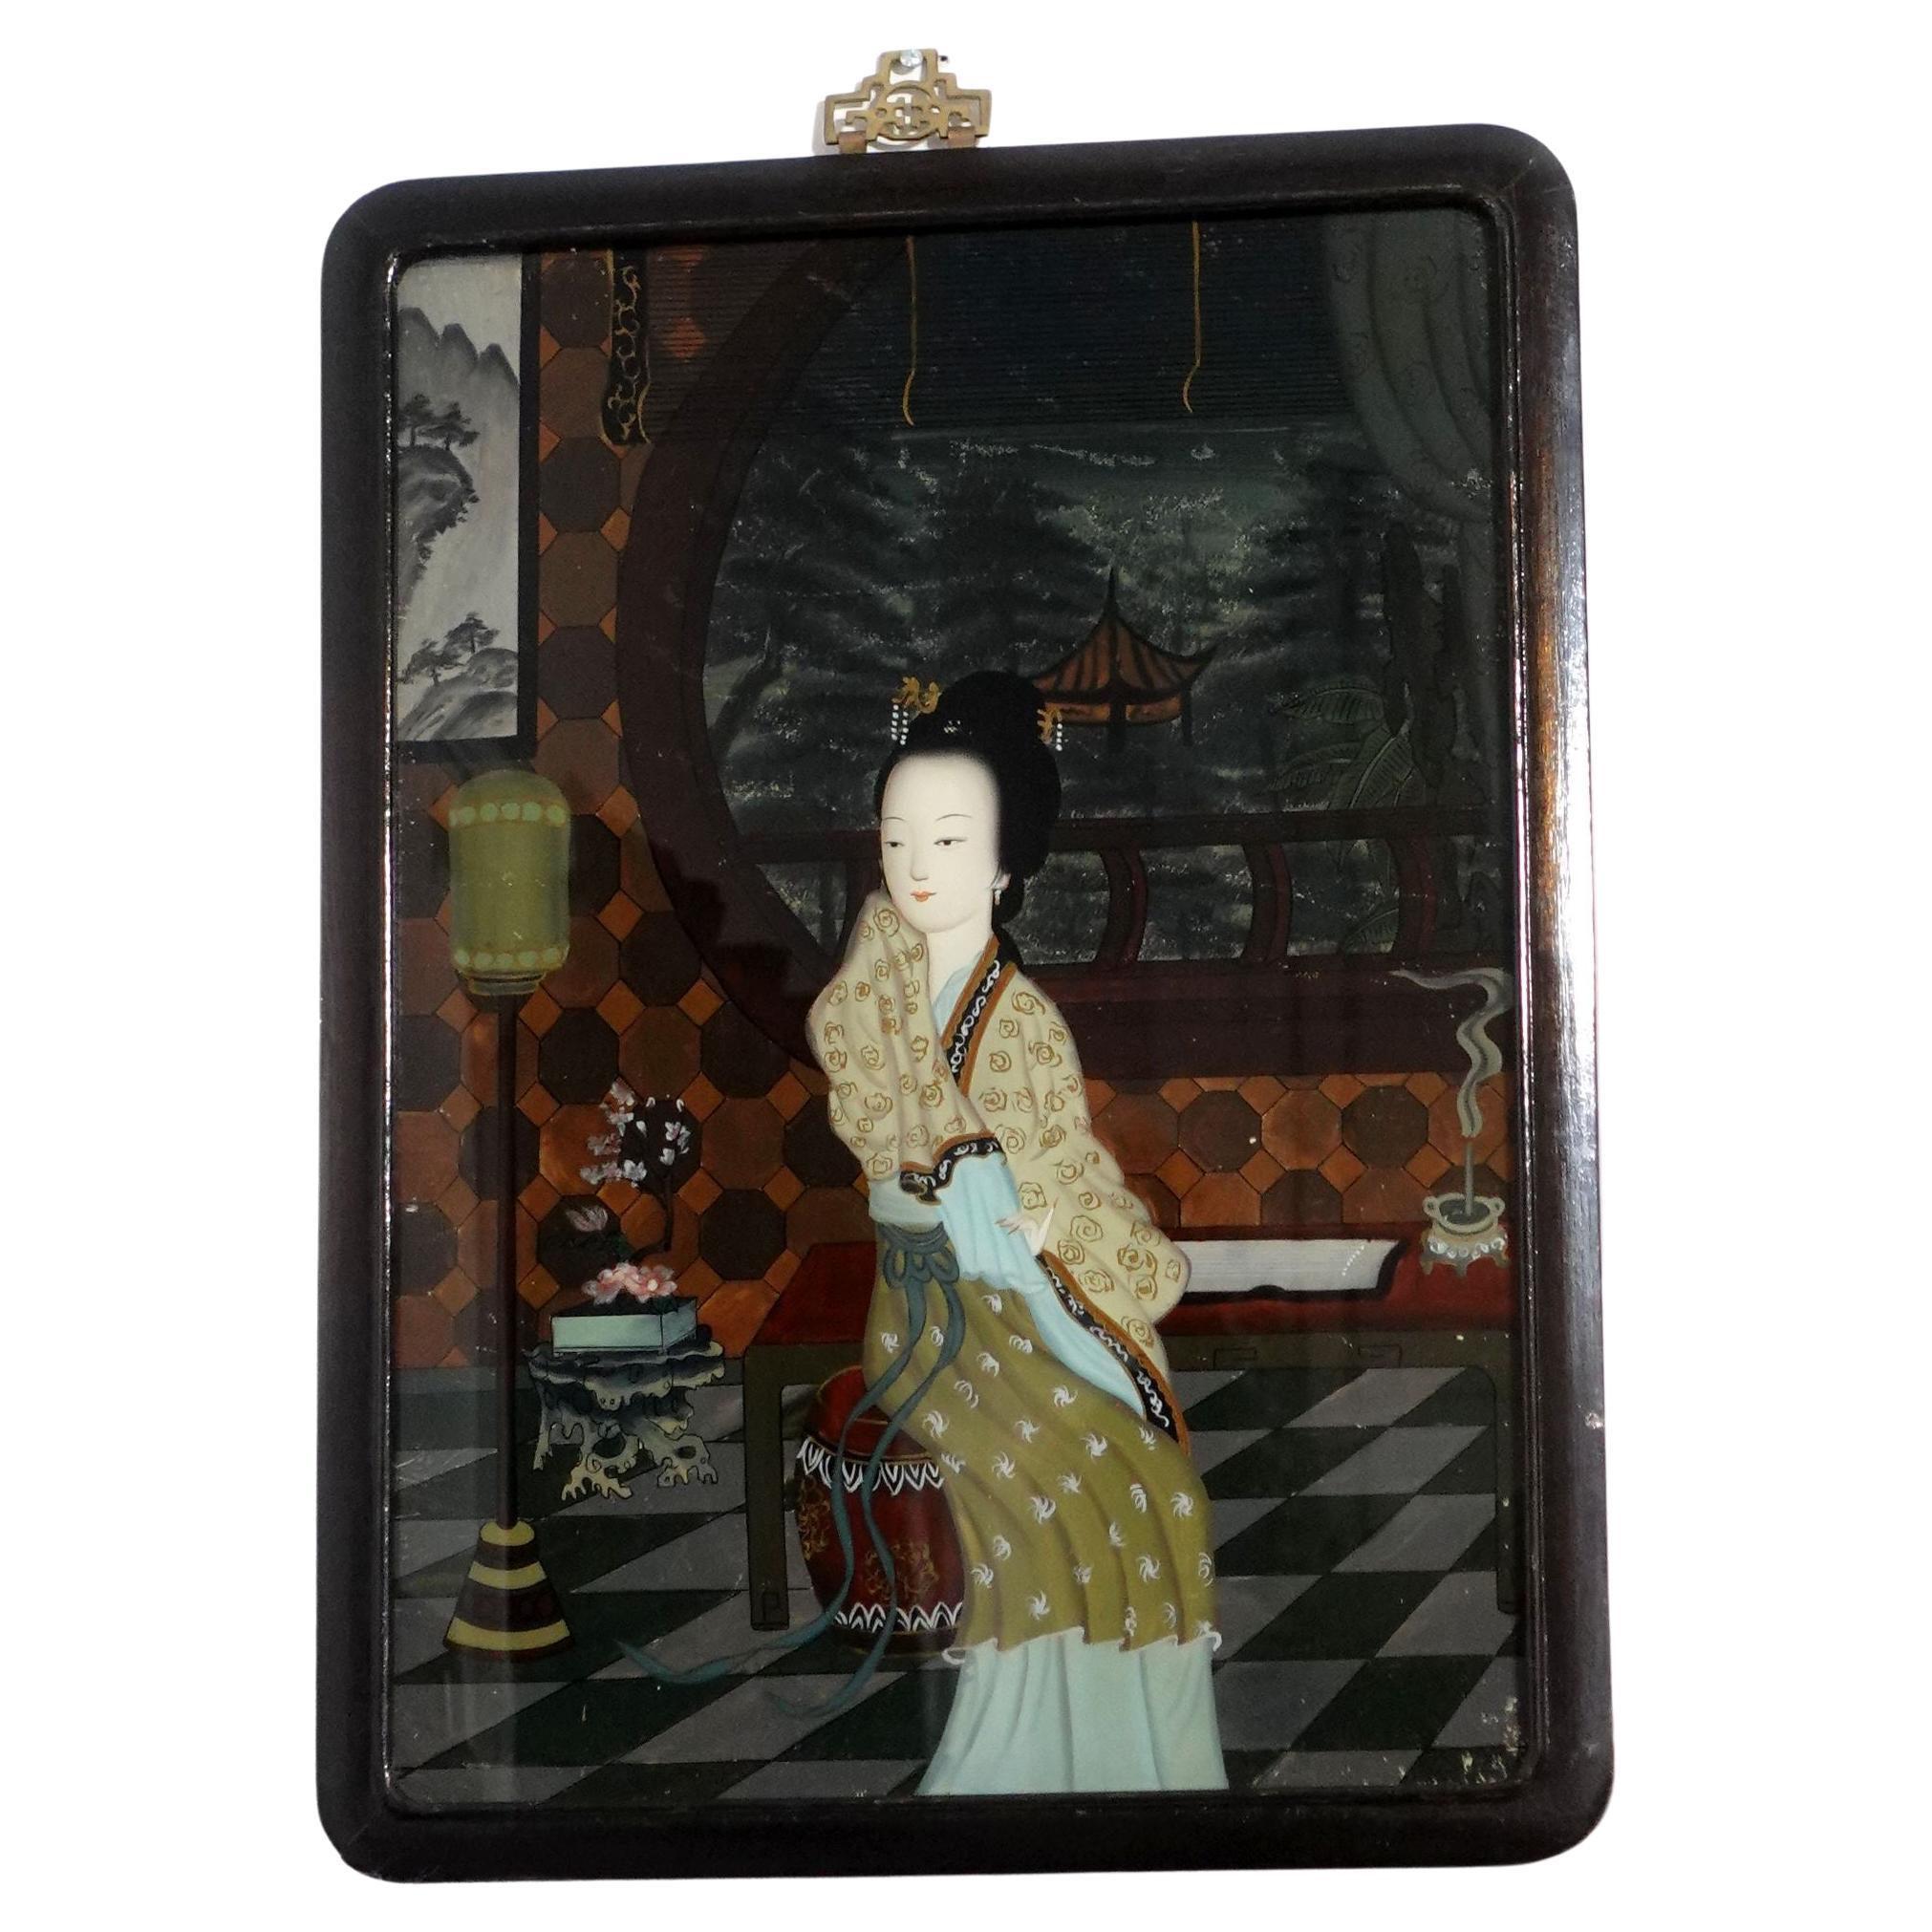 Peinture inversée d'exportation chinoise ancienne sur verre - Une femme assise dans la pièce